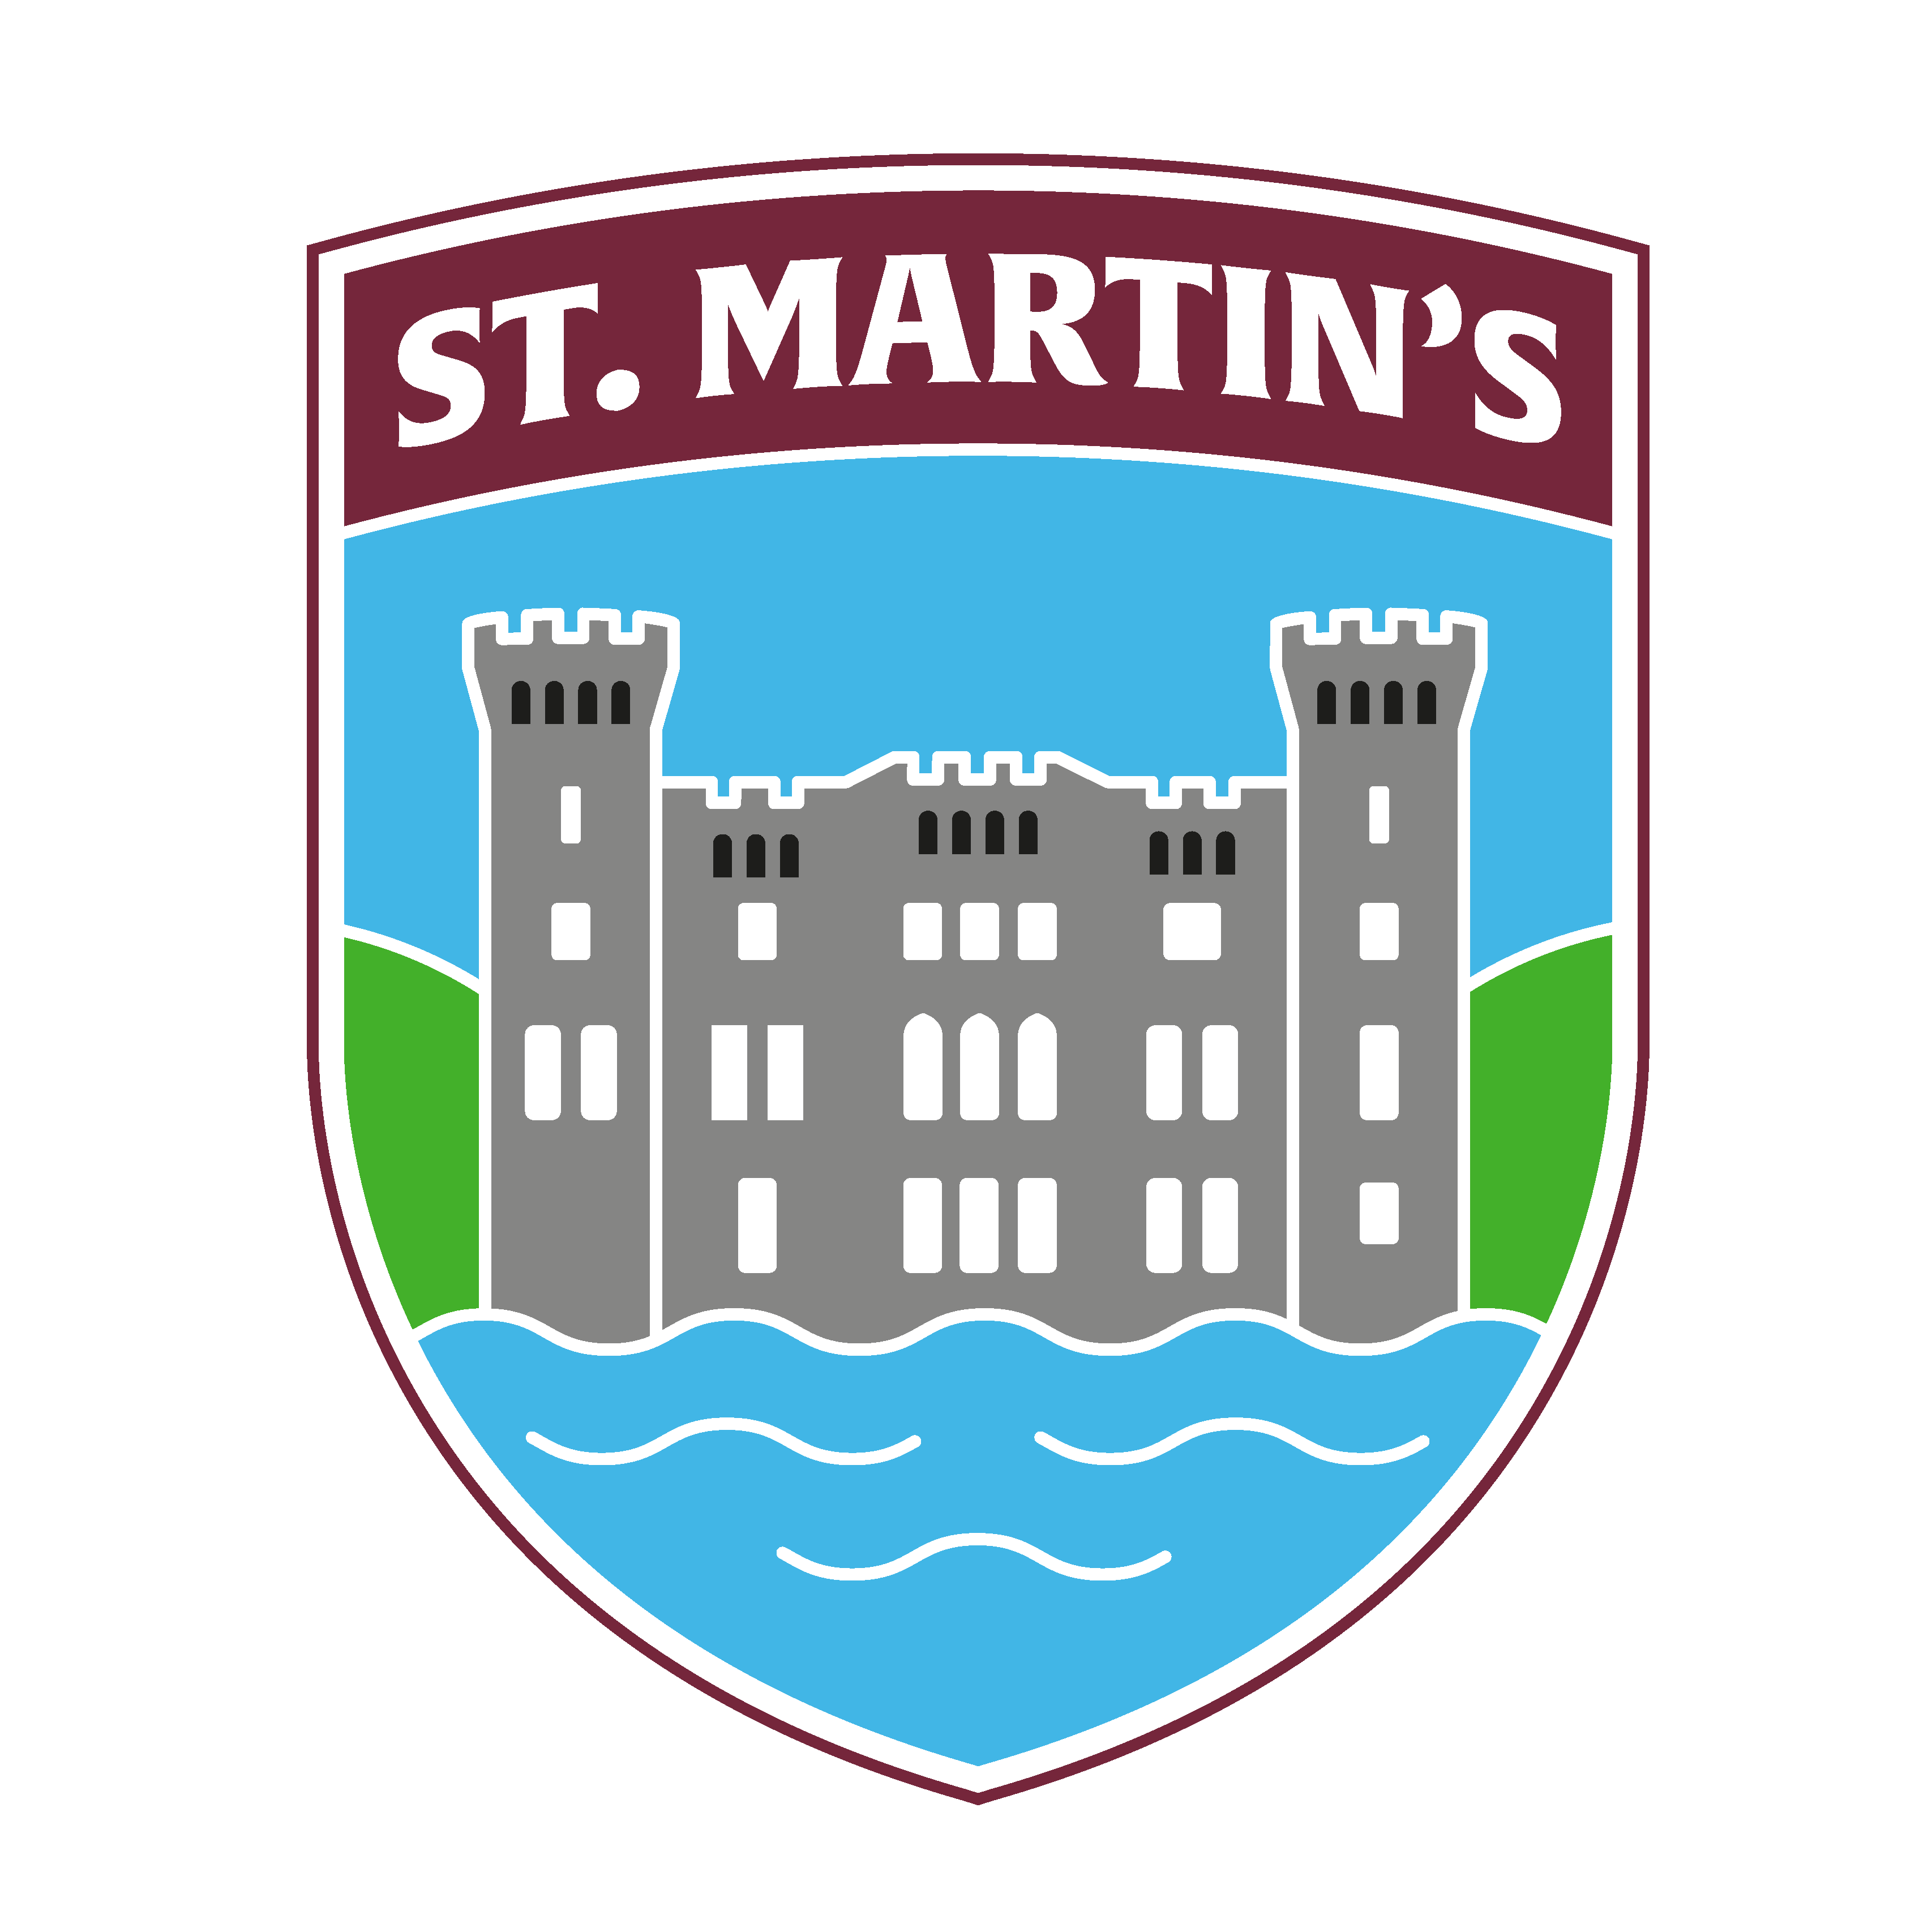 St. Martin's GAA